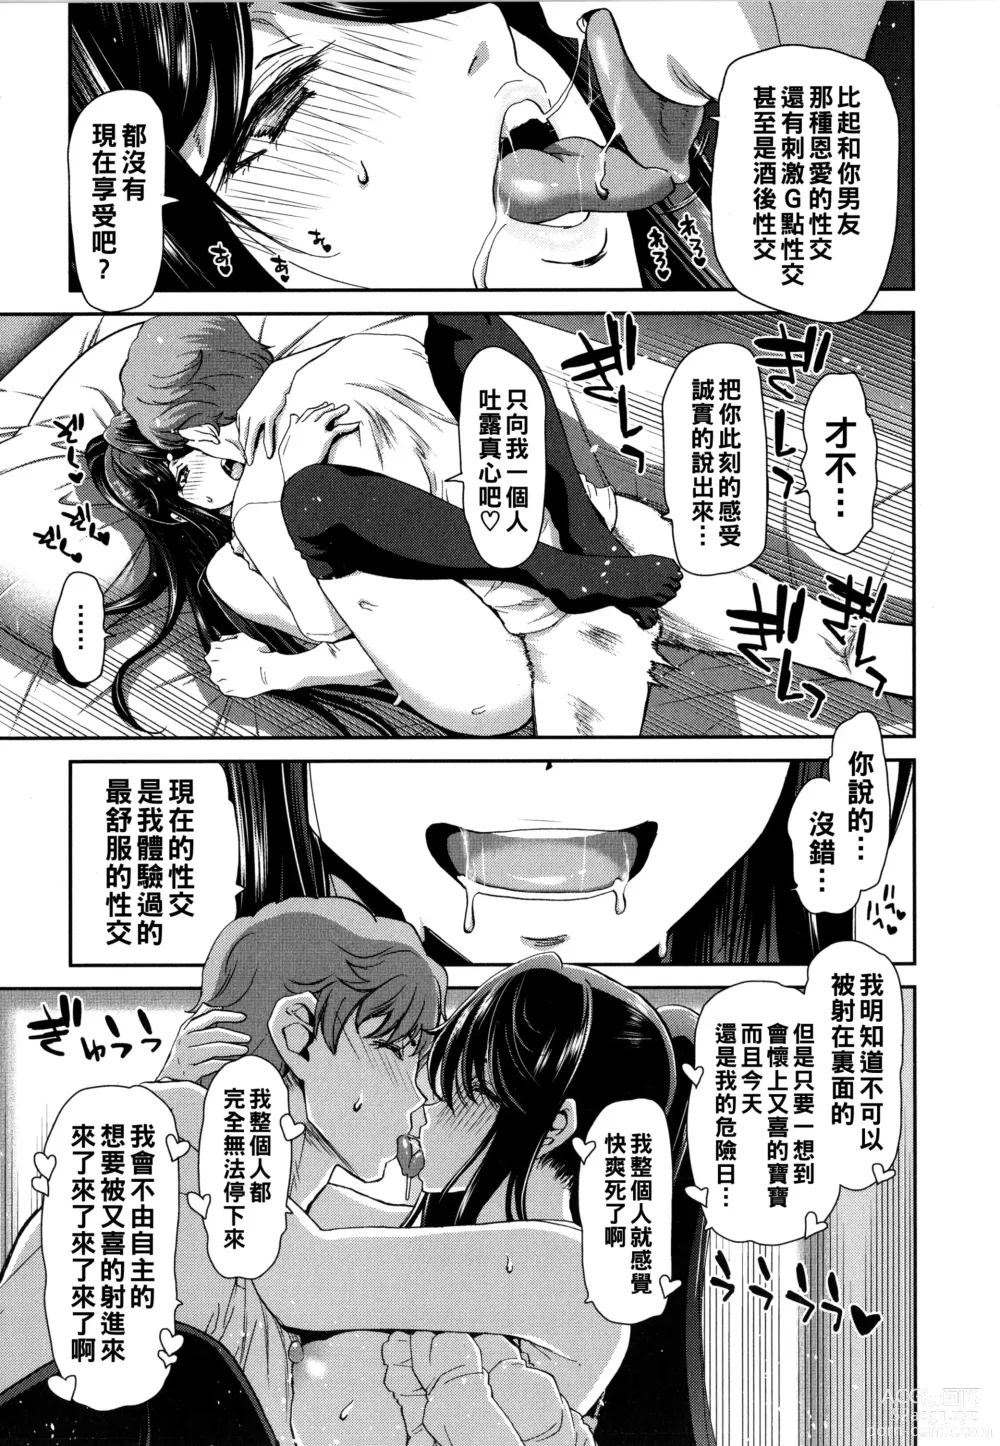 Page 177 of manga Iede Onna o Hirottara - When I picked up a runaway girl. + Melonbooks Gentei Tokuten   Otona no Iede Gojitsudan Sono Ato no Arisa to Akira